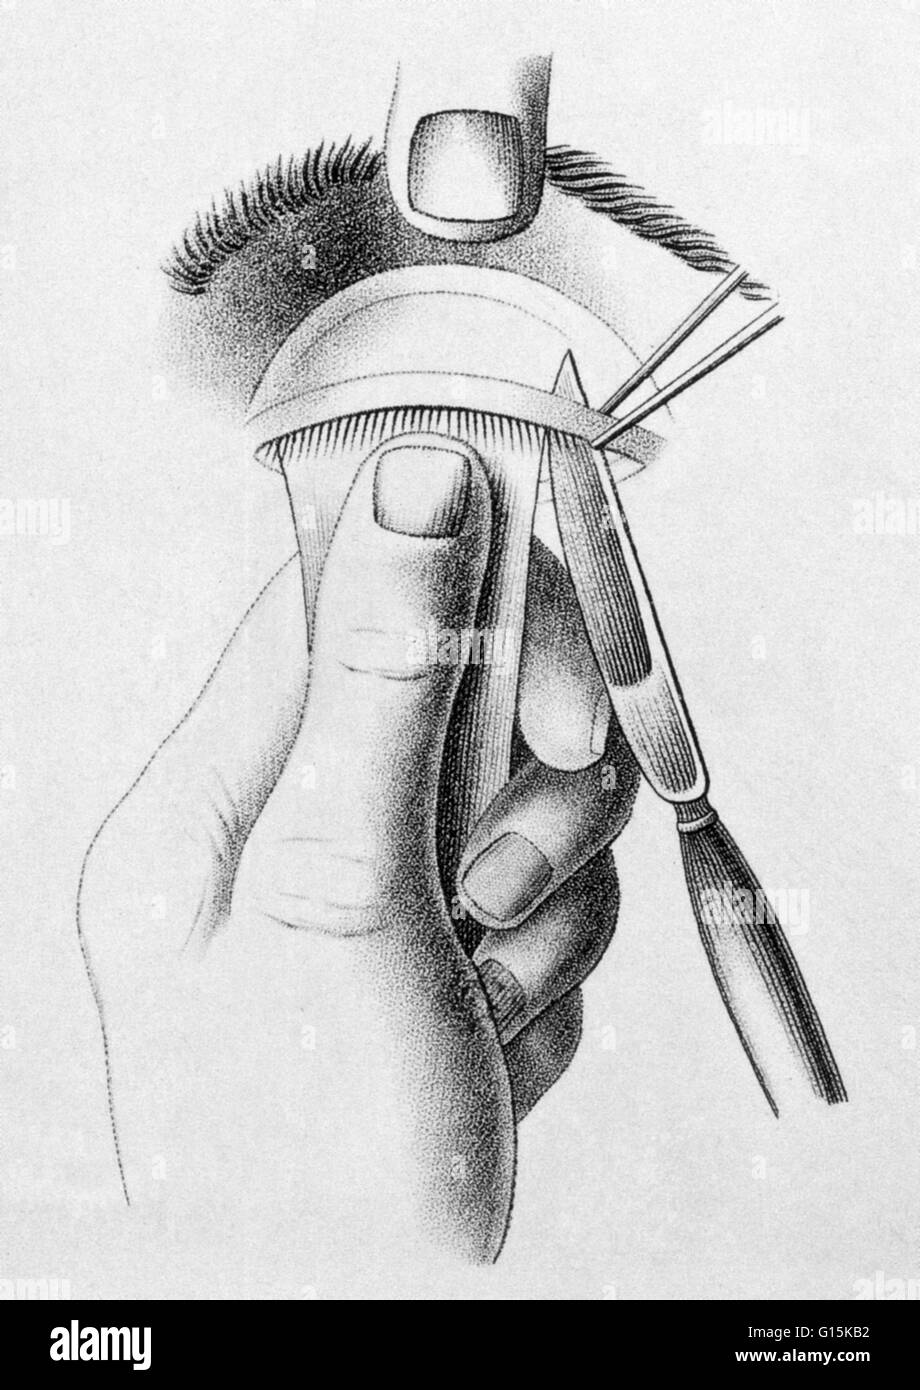 Illustration de la procédure chirurgicale pour corriger un paresseux de la paupière supérieure (ptosis), ch. 1830. Banque D'Images